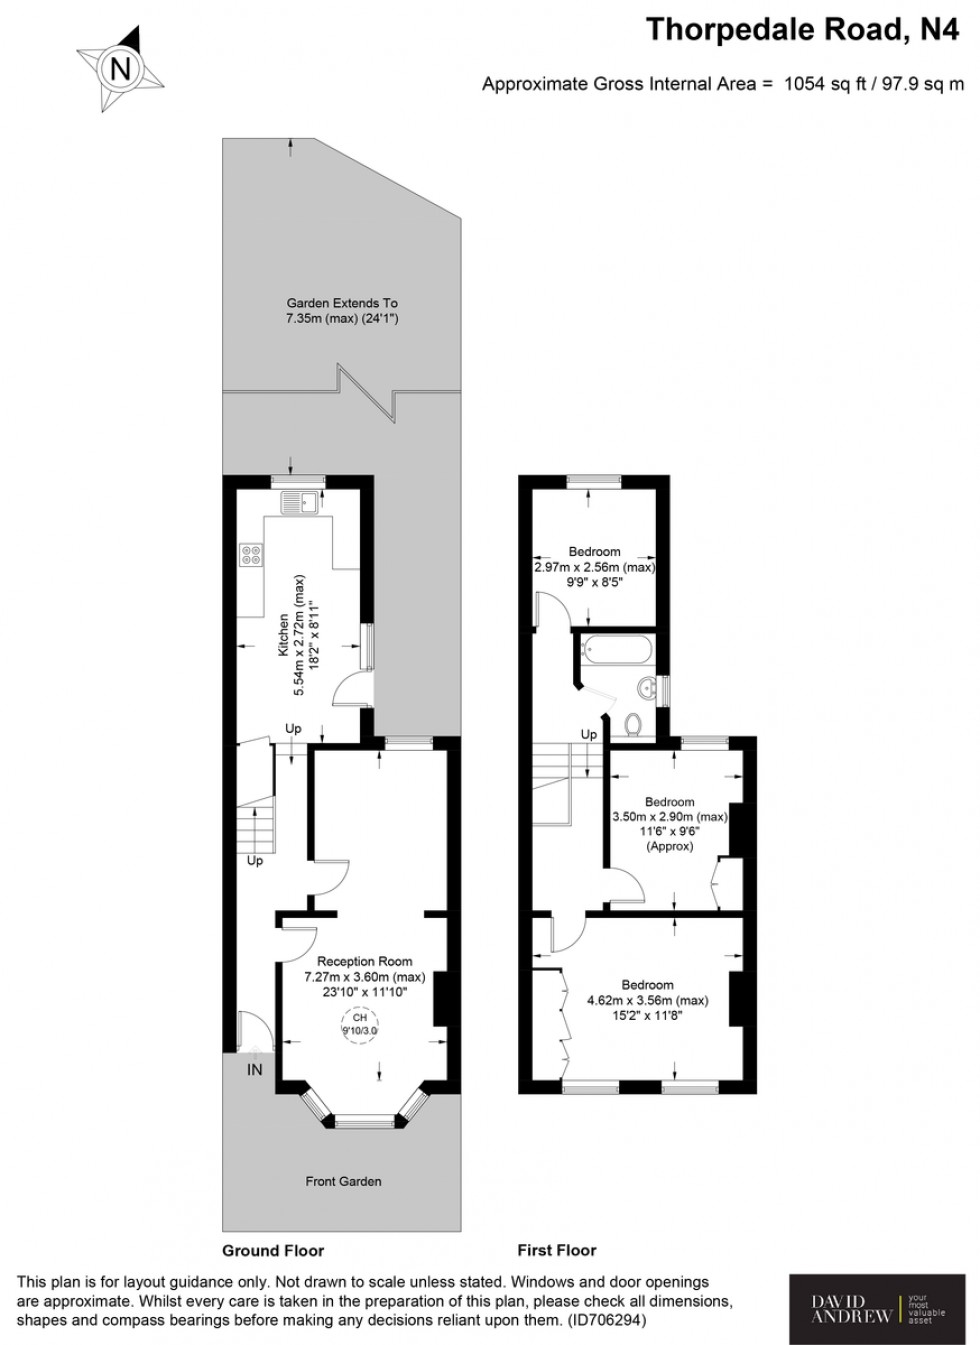 Floorplan for Thorpedale Road N4 4BS